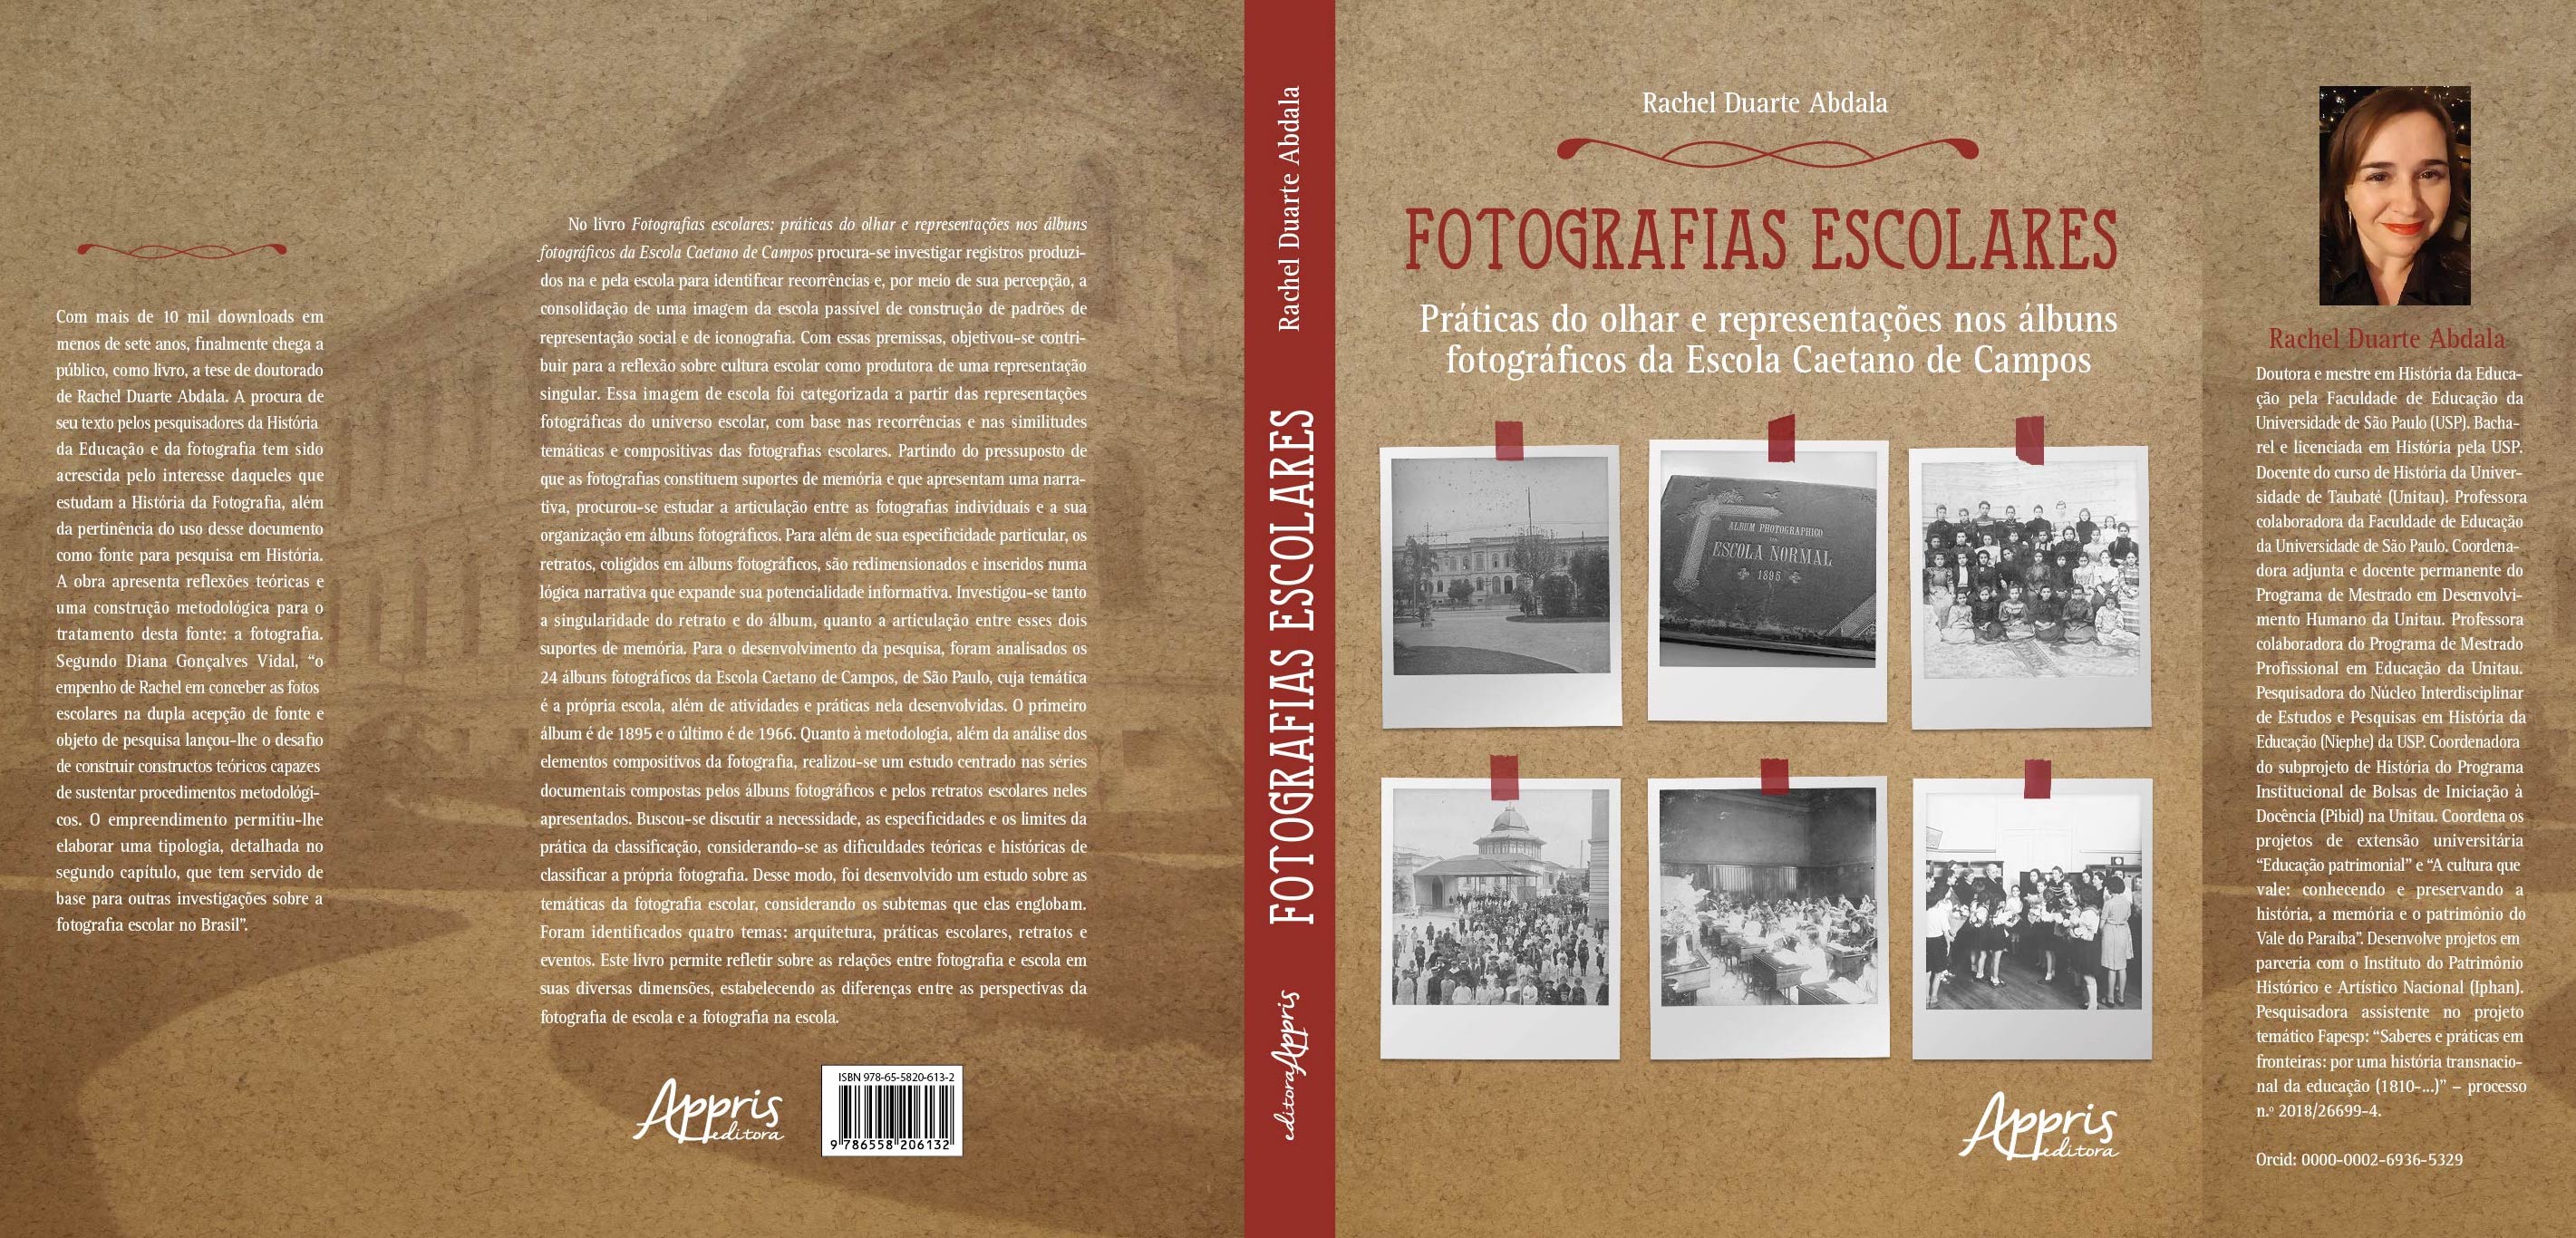 Fotografias escolares - Práticas do olhar e representações nos álbuns fotográficos da Escola Caetano de Campos